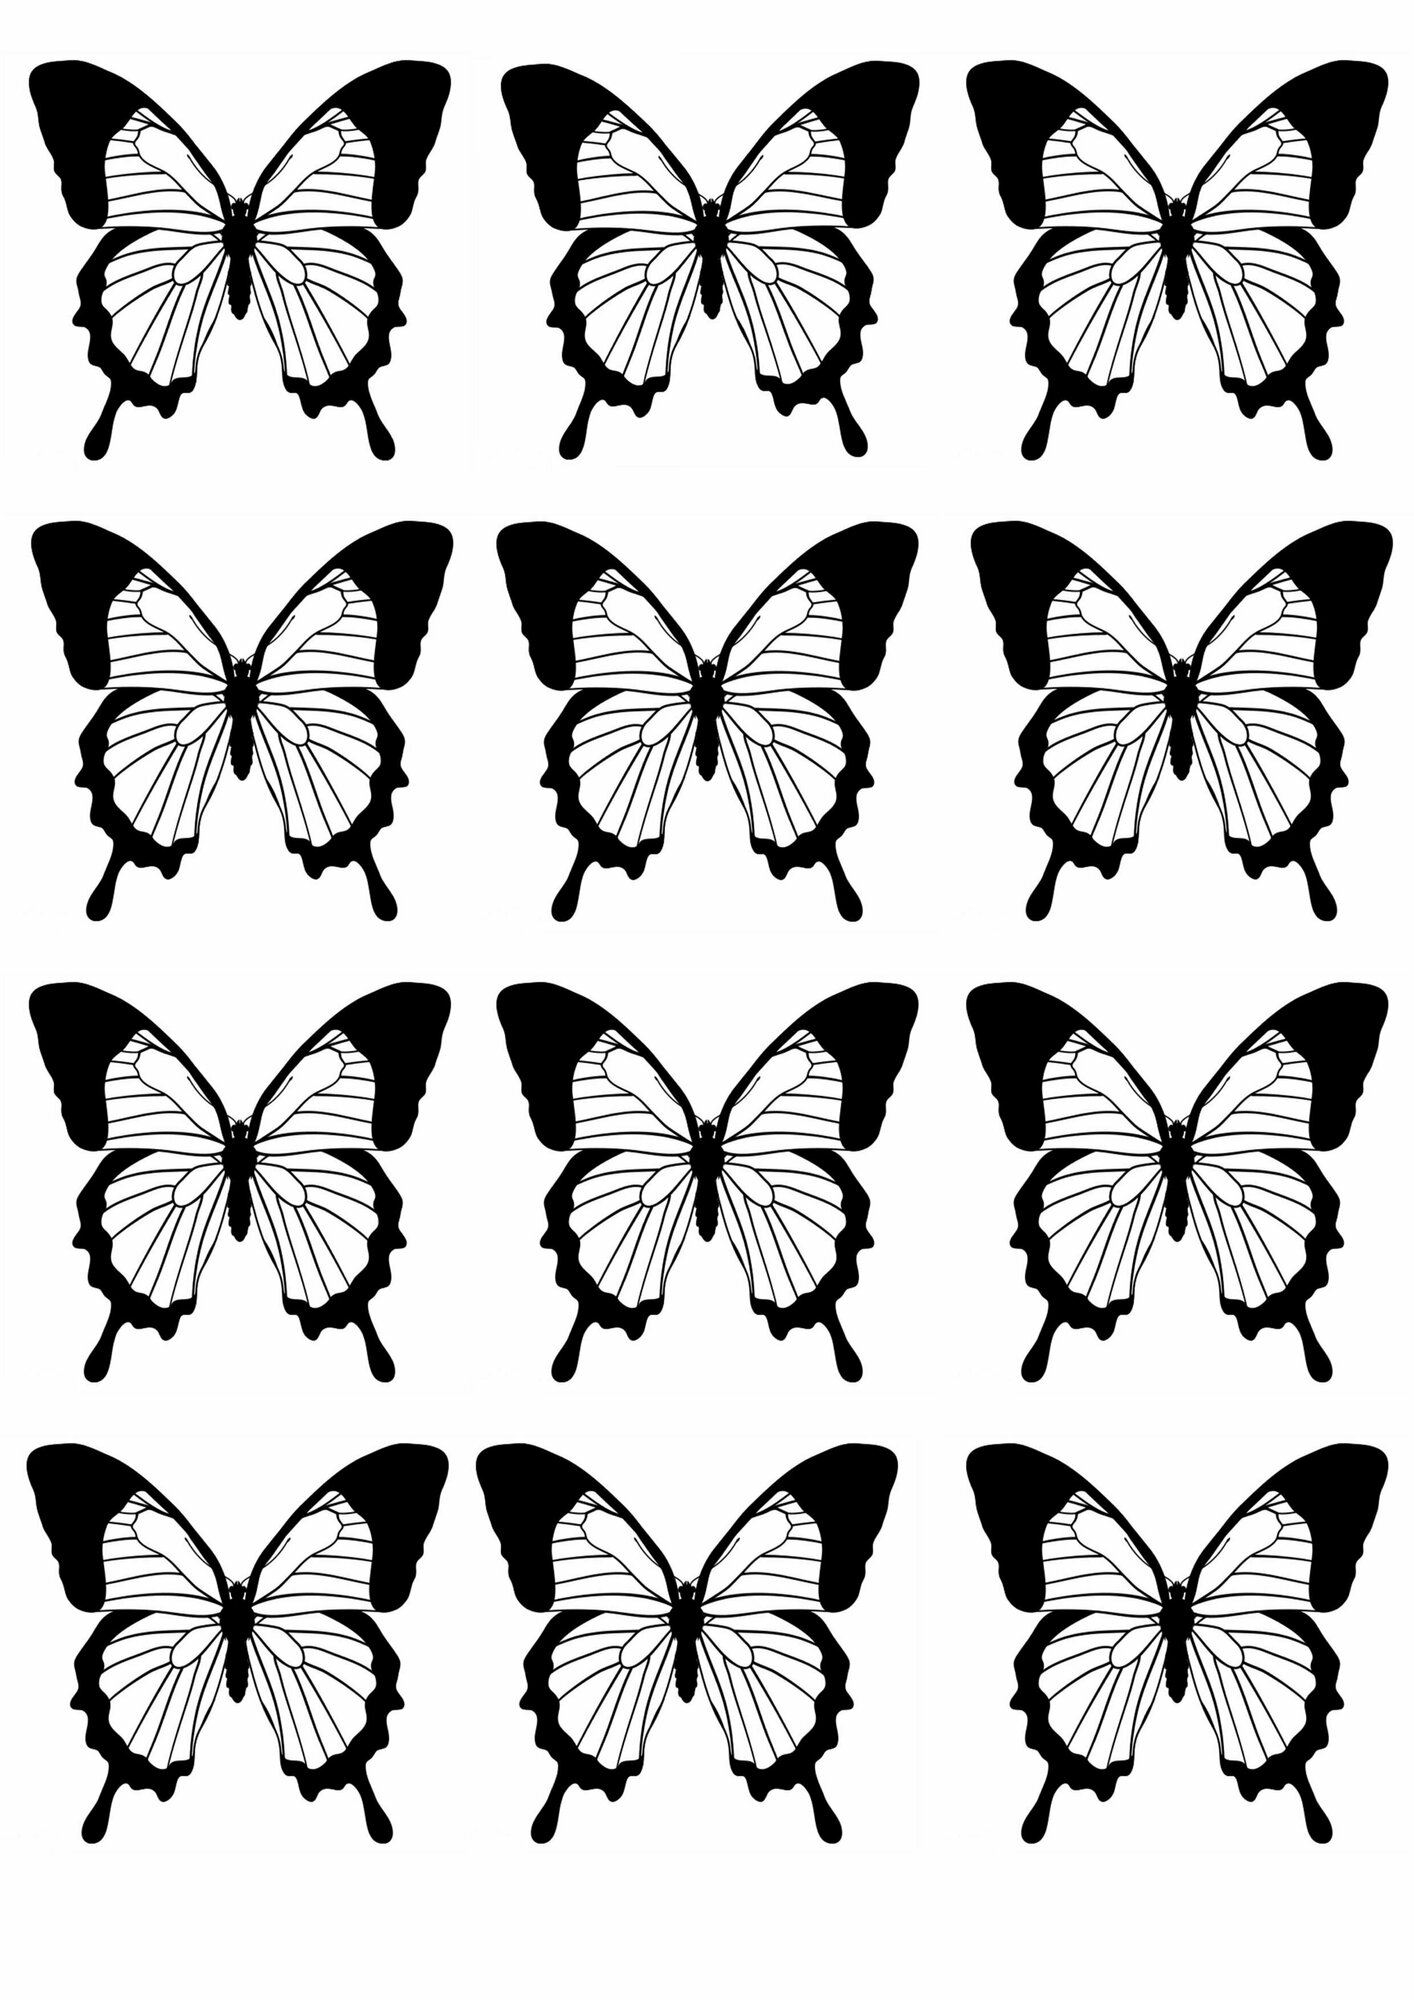 Бабочки на глянцевой фотобумаге для вырезания и создания букета из бабочек, творческих композиций